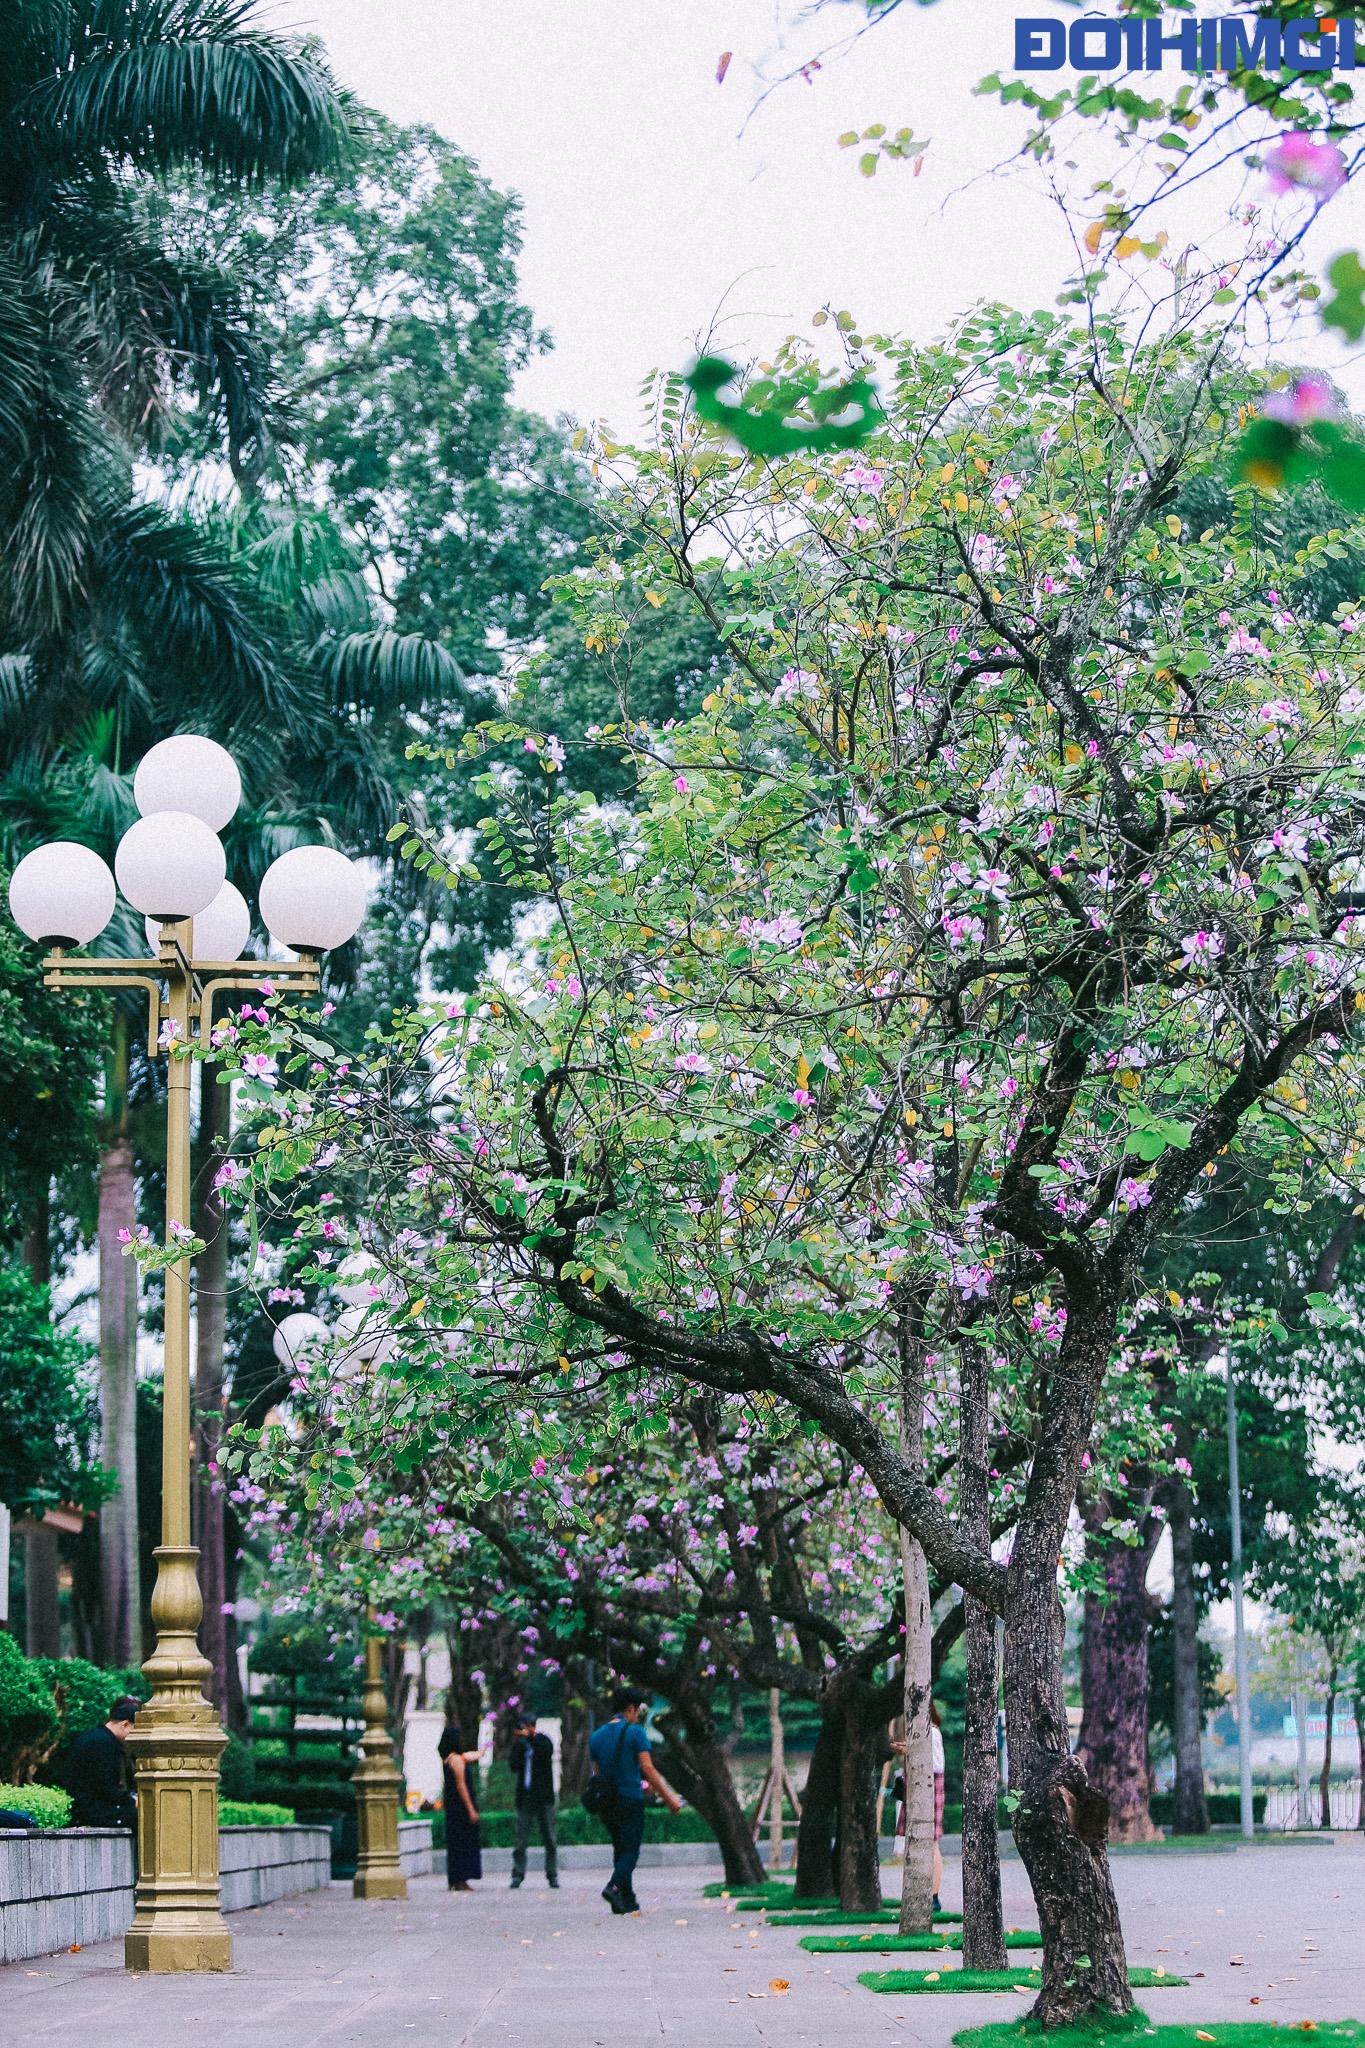 Hoa ban - một loài hoa của núi rừng Tây Bắc nở giữa phố phường Hà Nội luôn đem lại cho người ngắm hoa những xúc cảm đặc biệt.